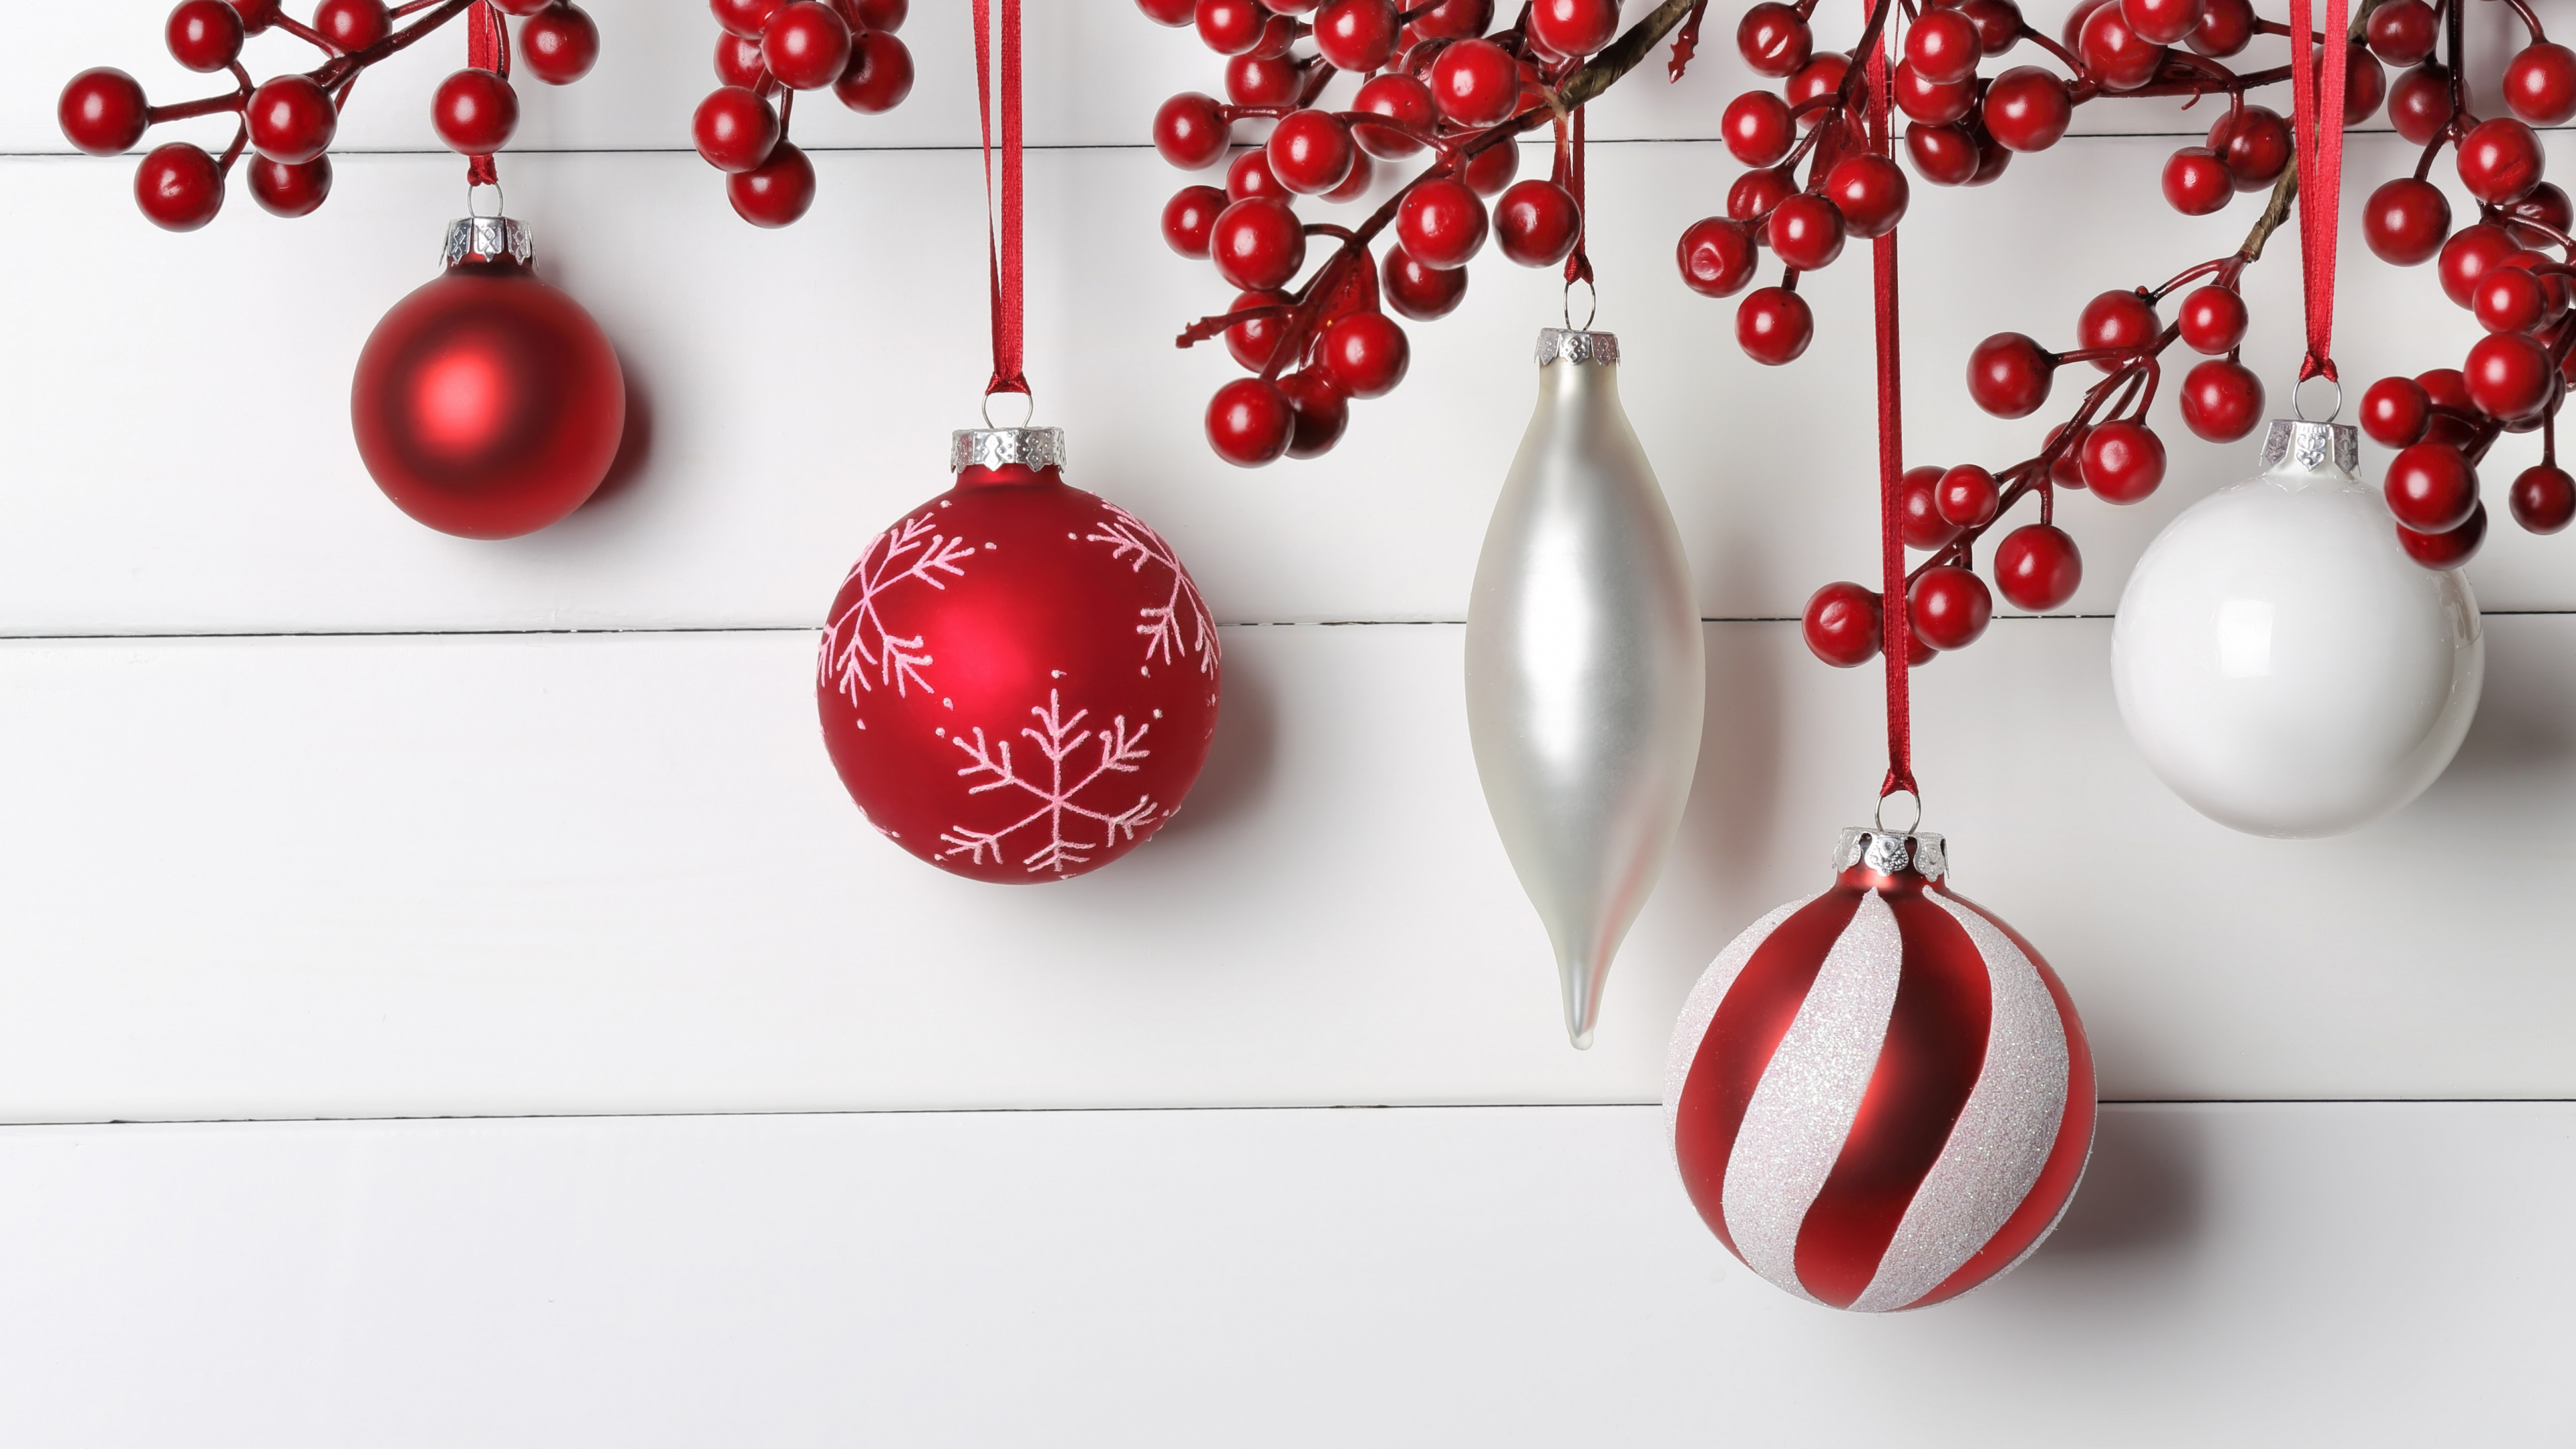 圣诞节那天, 圣诞节的装饰品, 圣诞装饰, 新的一年, 红色的 壁纸 3840x2160 允许